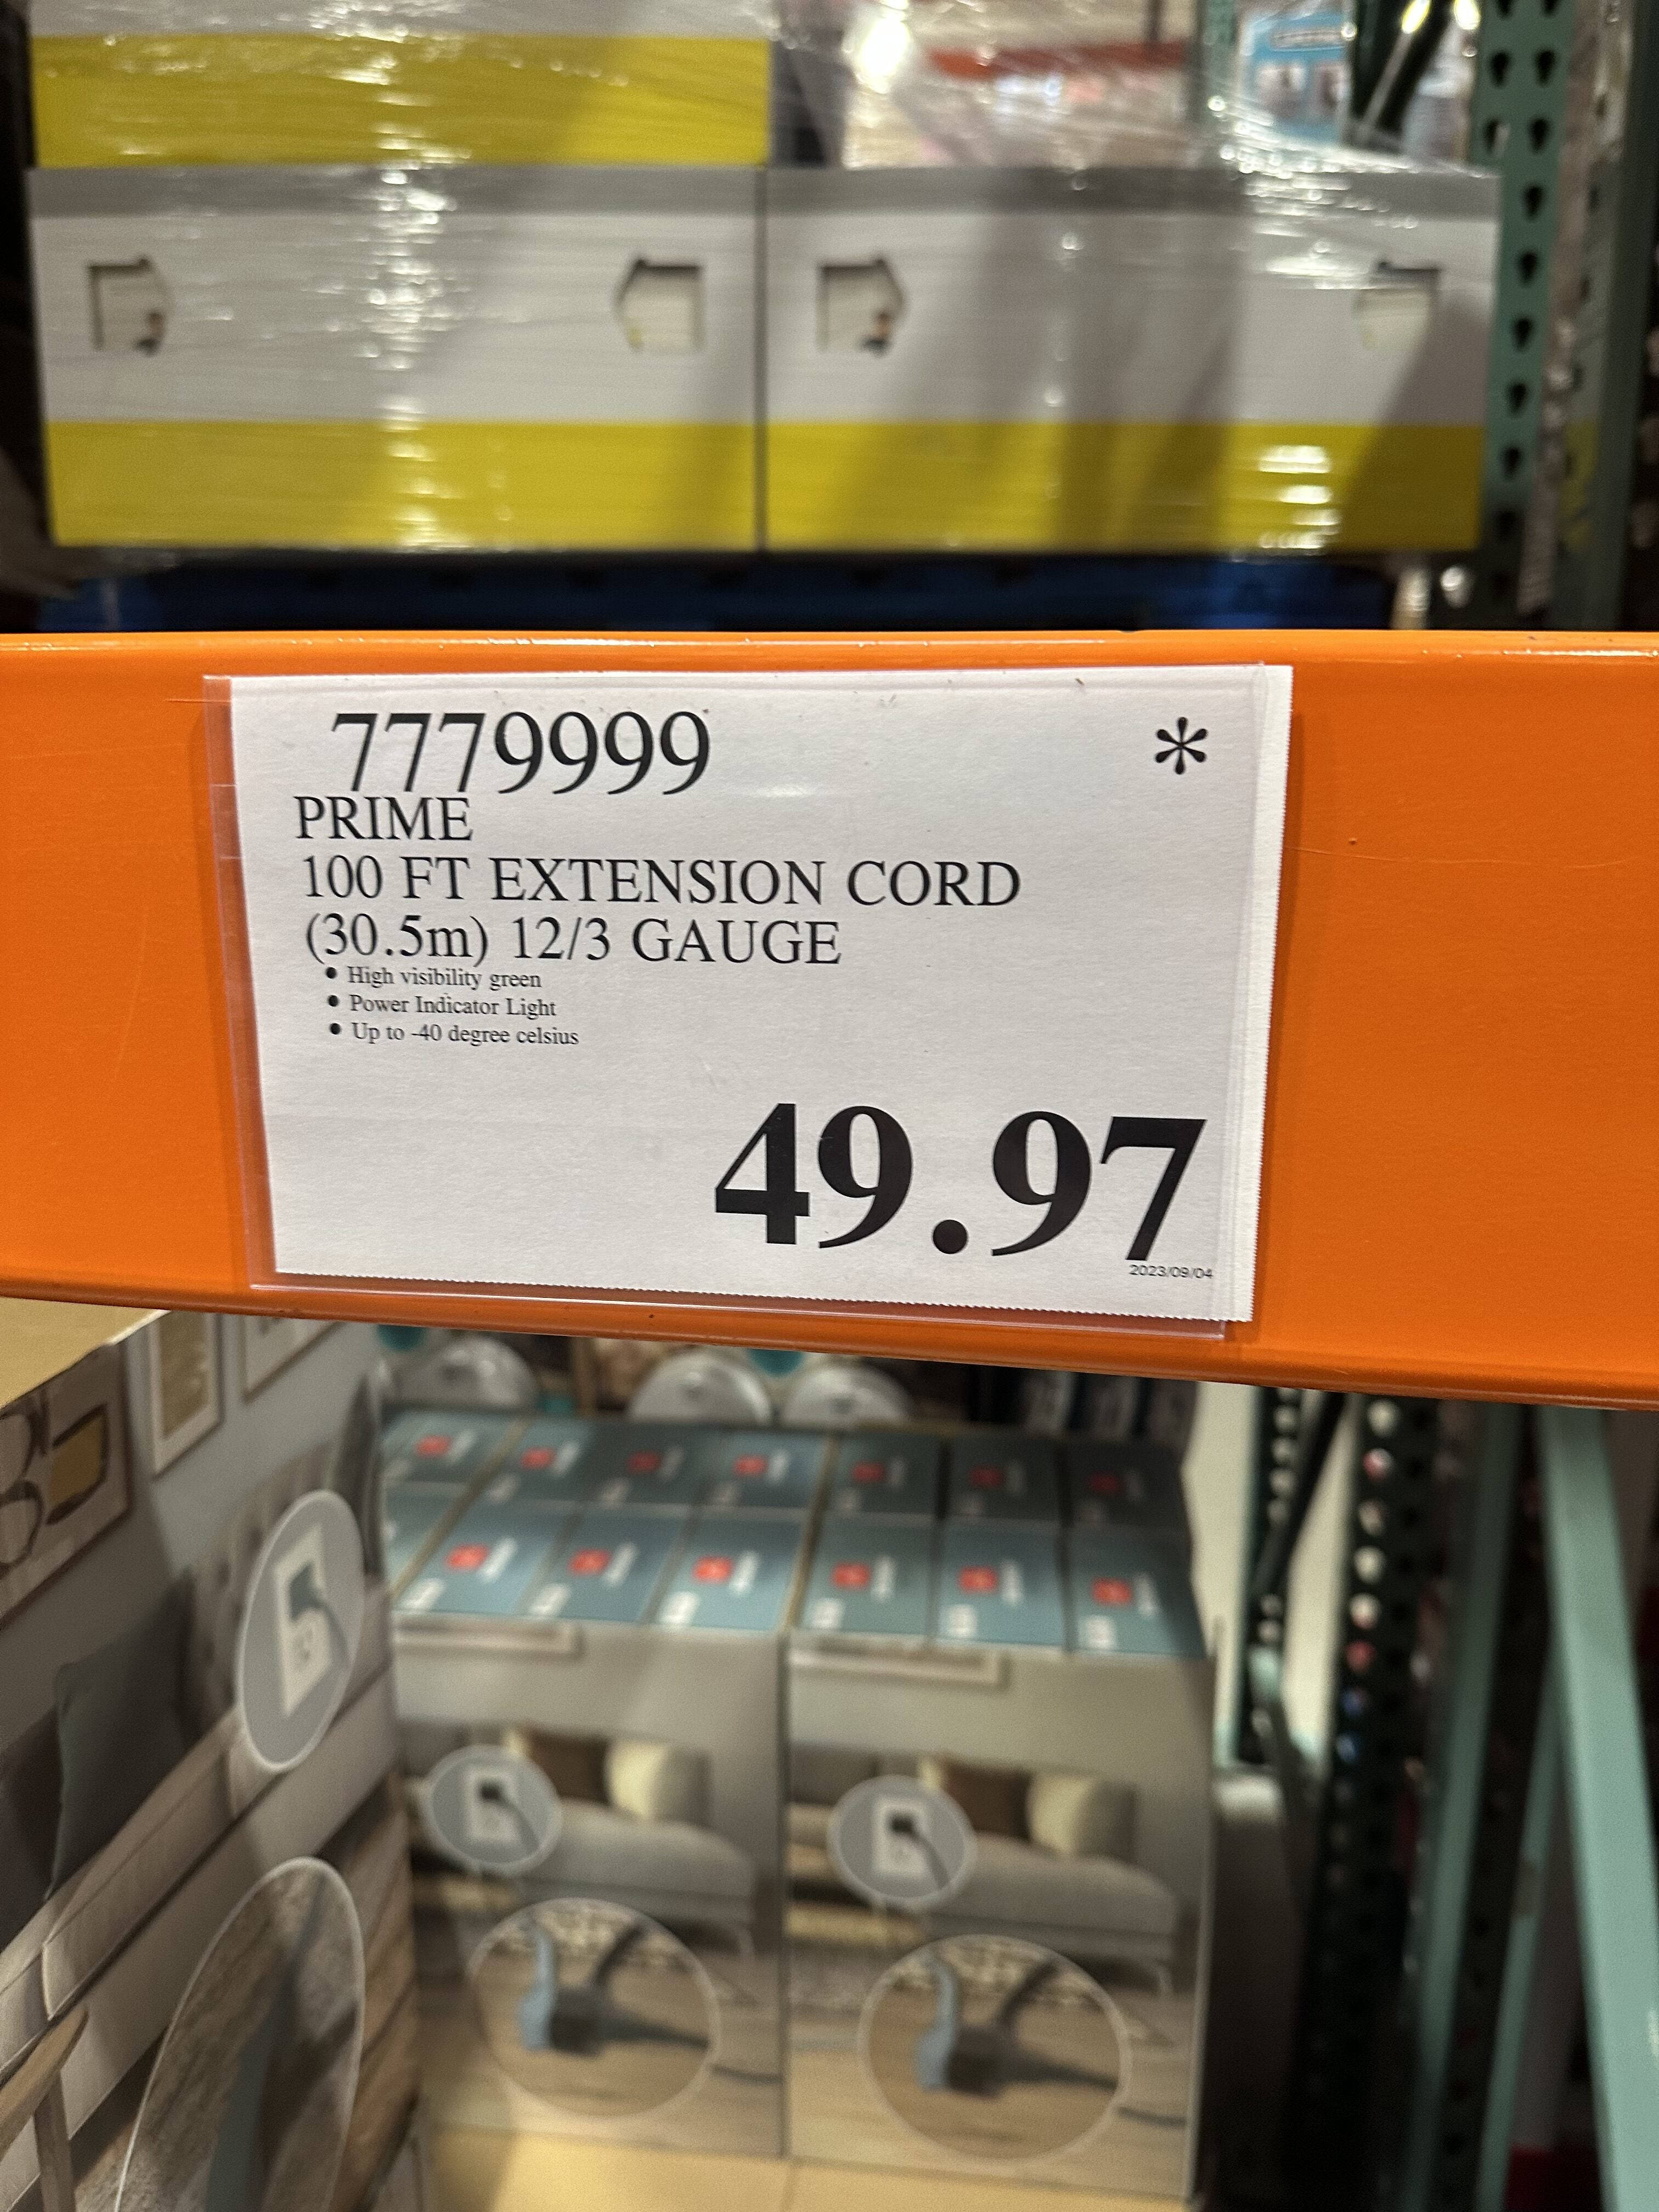 Costco] Prime 100ft 12/3 green extension cord - $49.97 reg $69 -  RedFlagDeals.com Forums